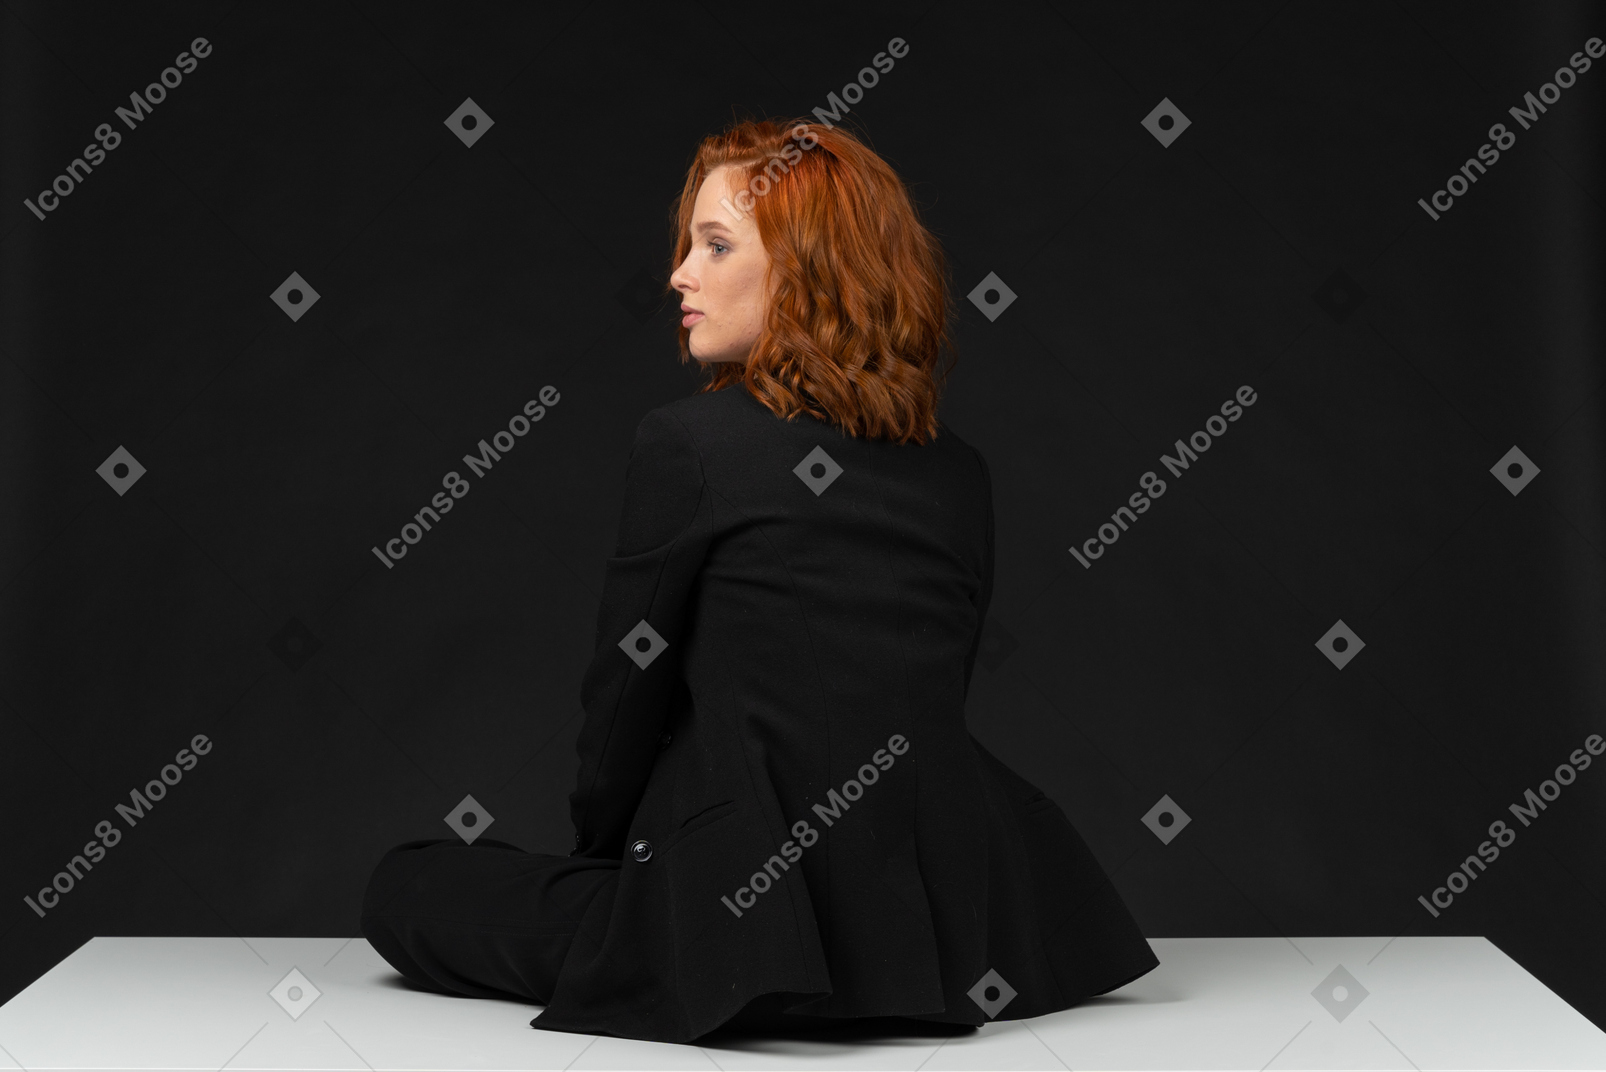 검은 옷을 입고 테이블에 앉아있는 젊은 여성의 뒷면보기